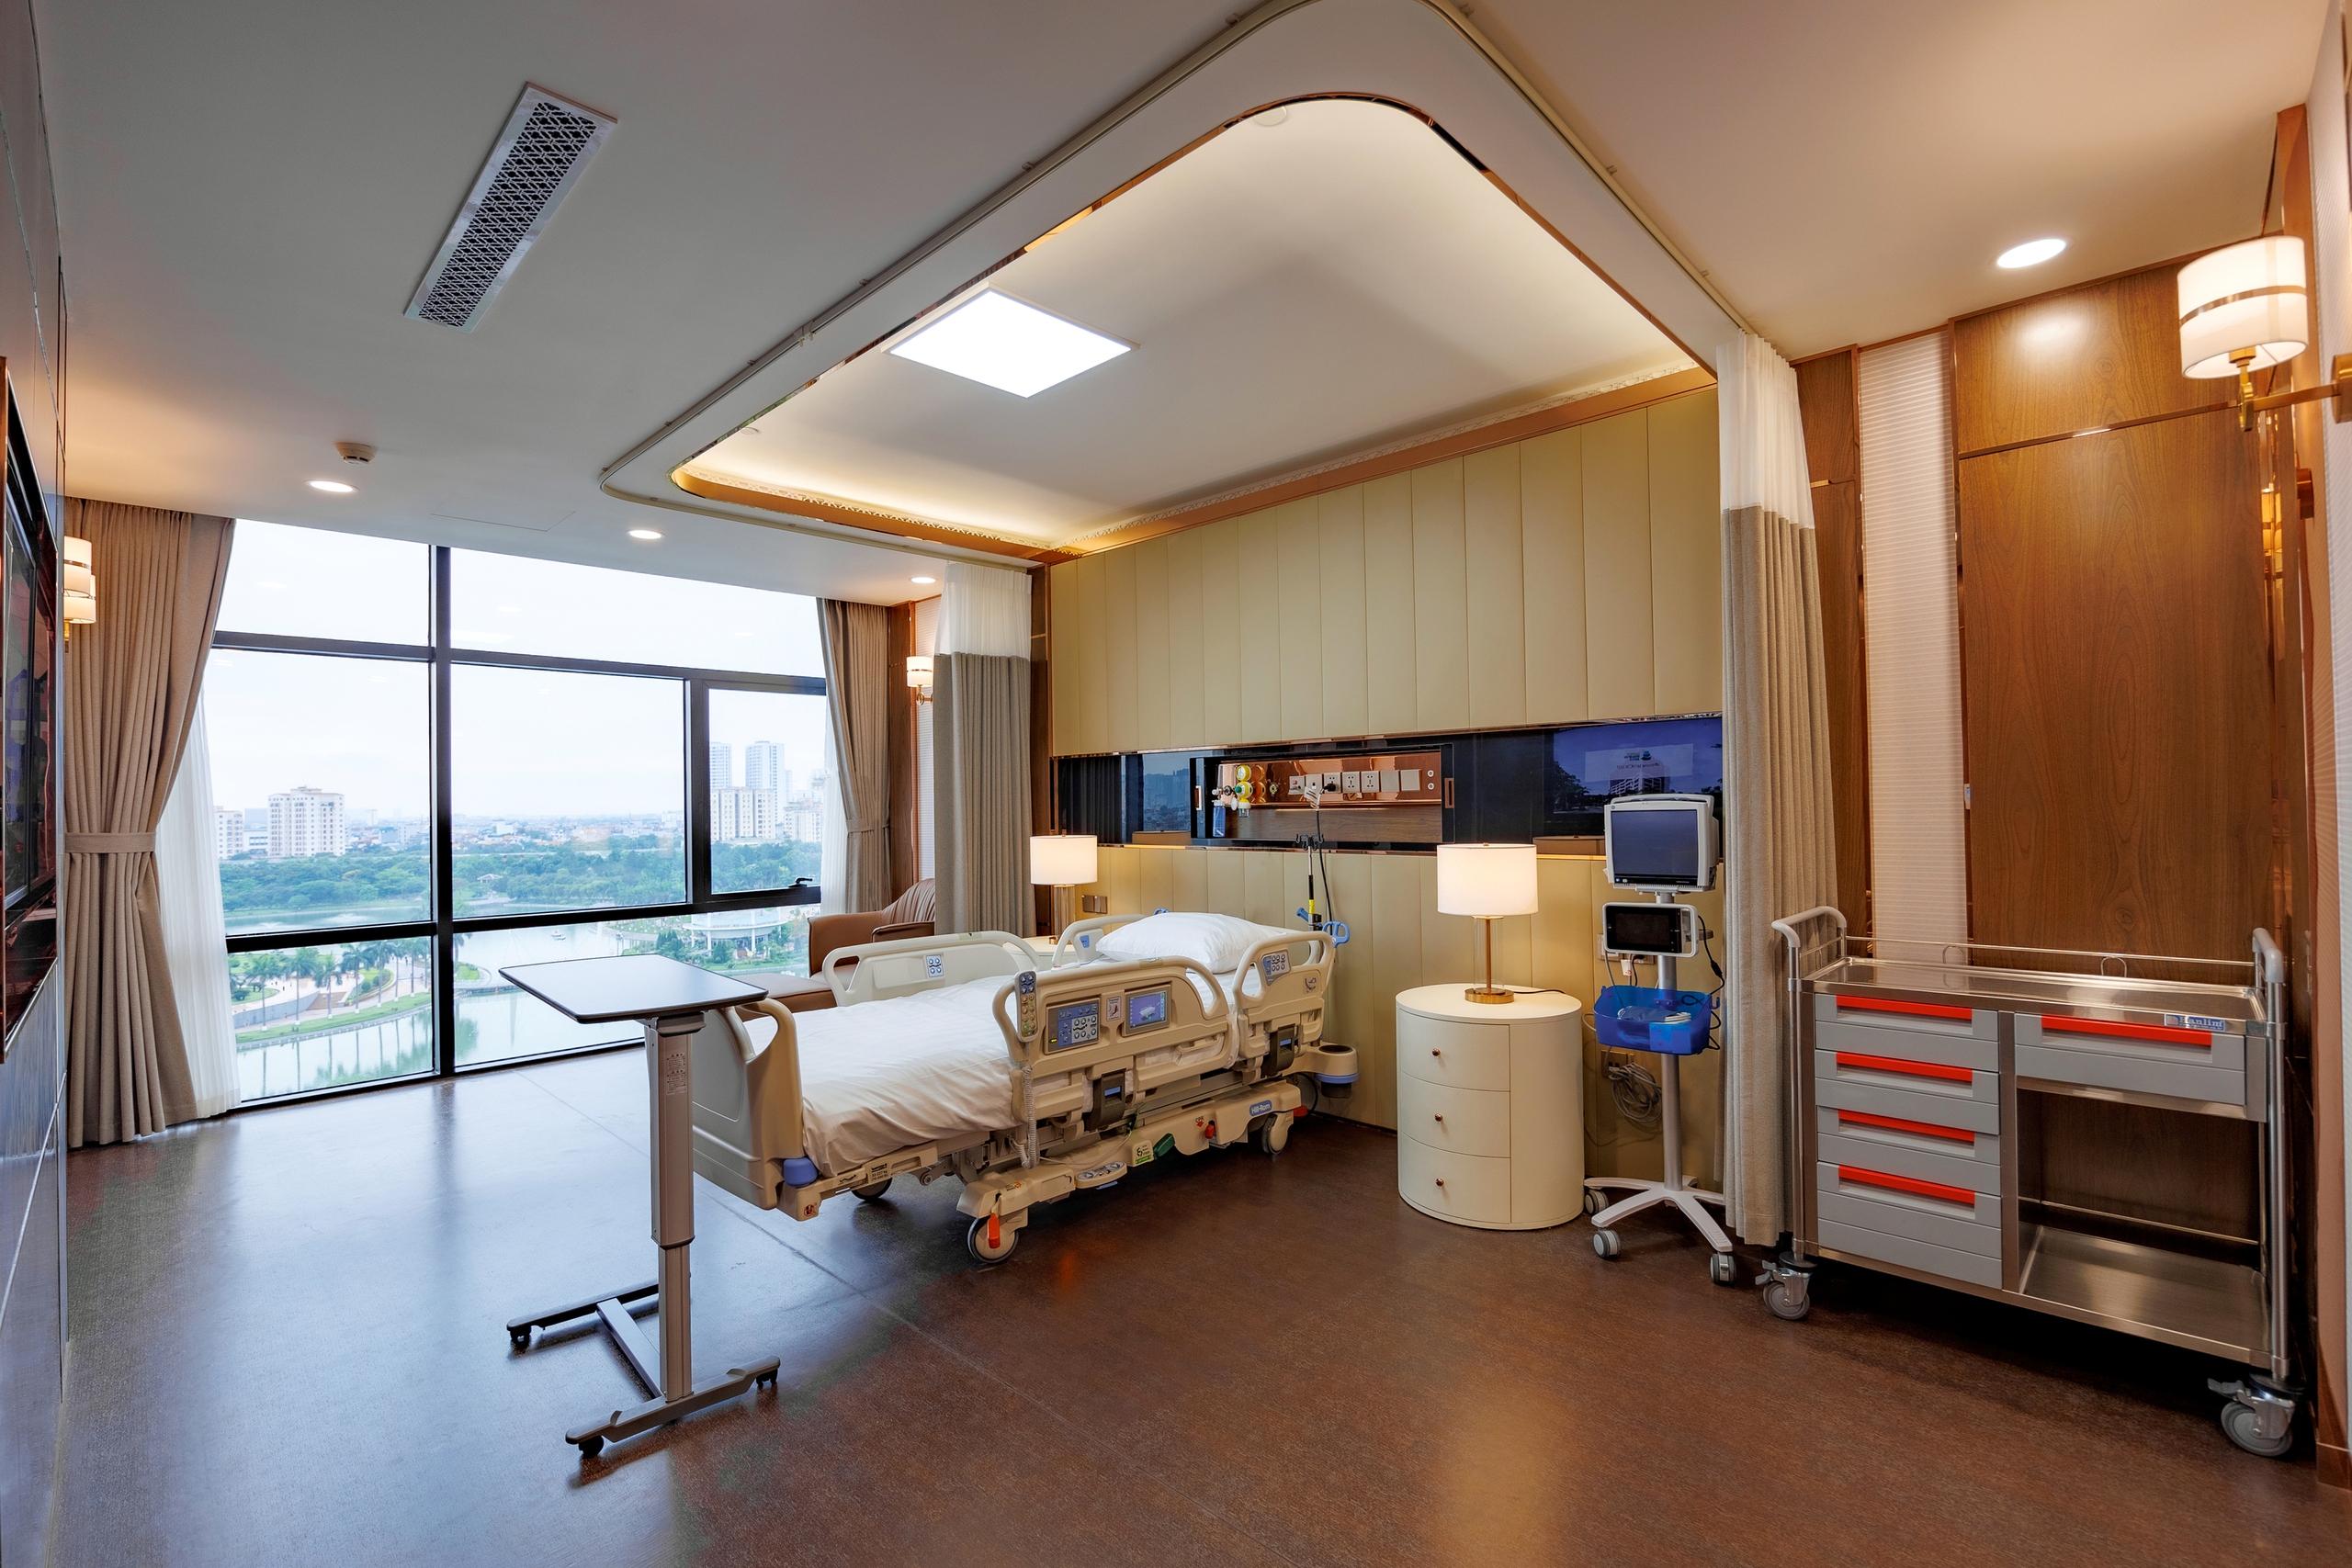 Sun Group khánh thành Bệnh viện Mặt Trời hiện đại bậc nhất Việt Nam- Ảnh 4.